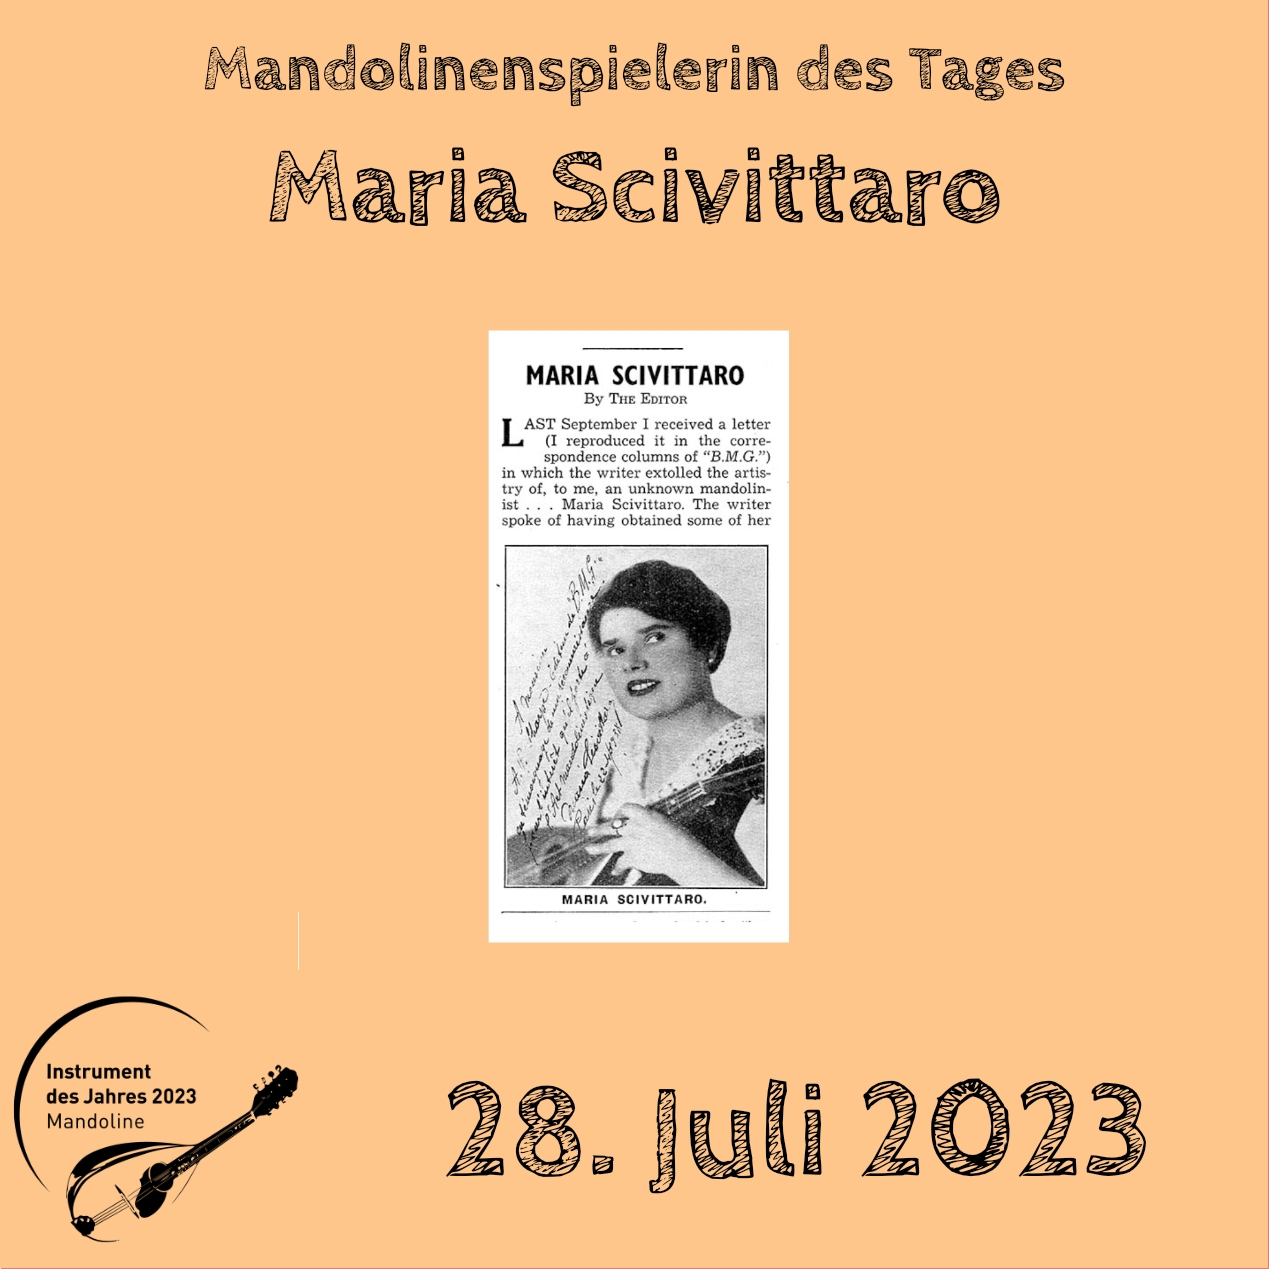 28. Juli - Maria Scivittaro Mandoline Instrument des Jahres 2023 Mandolinenspieler Mandolinenspielerin des Tages